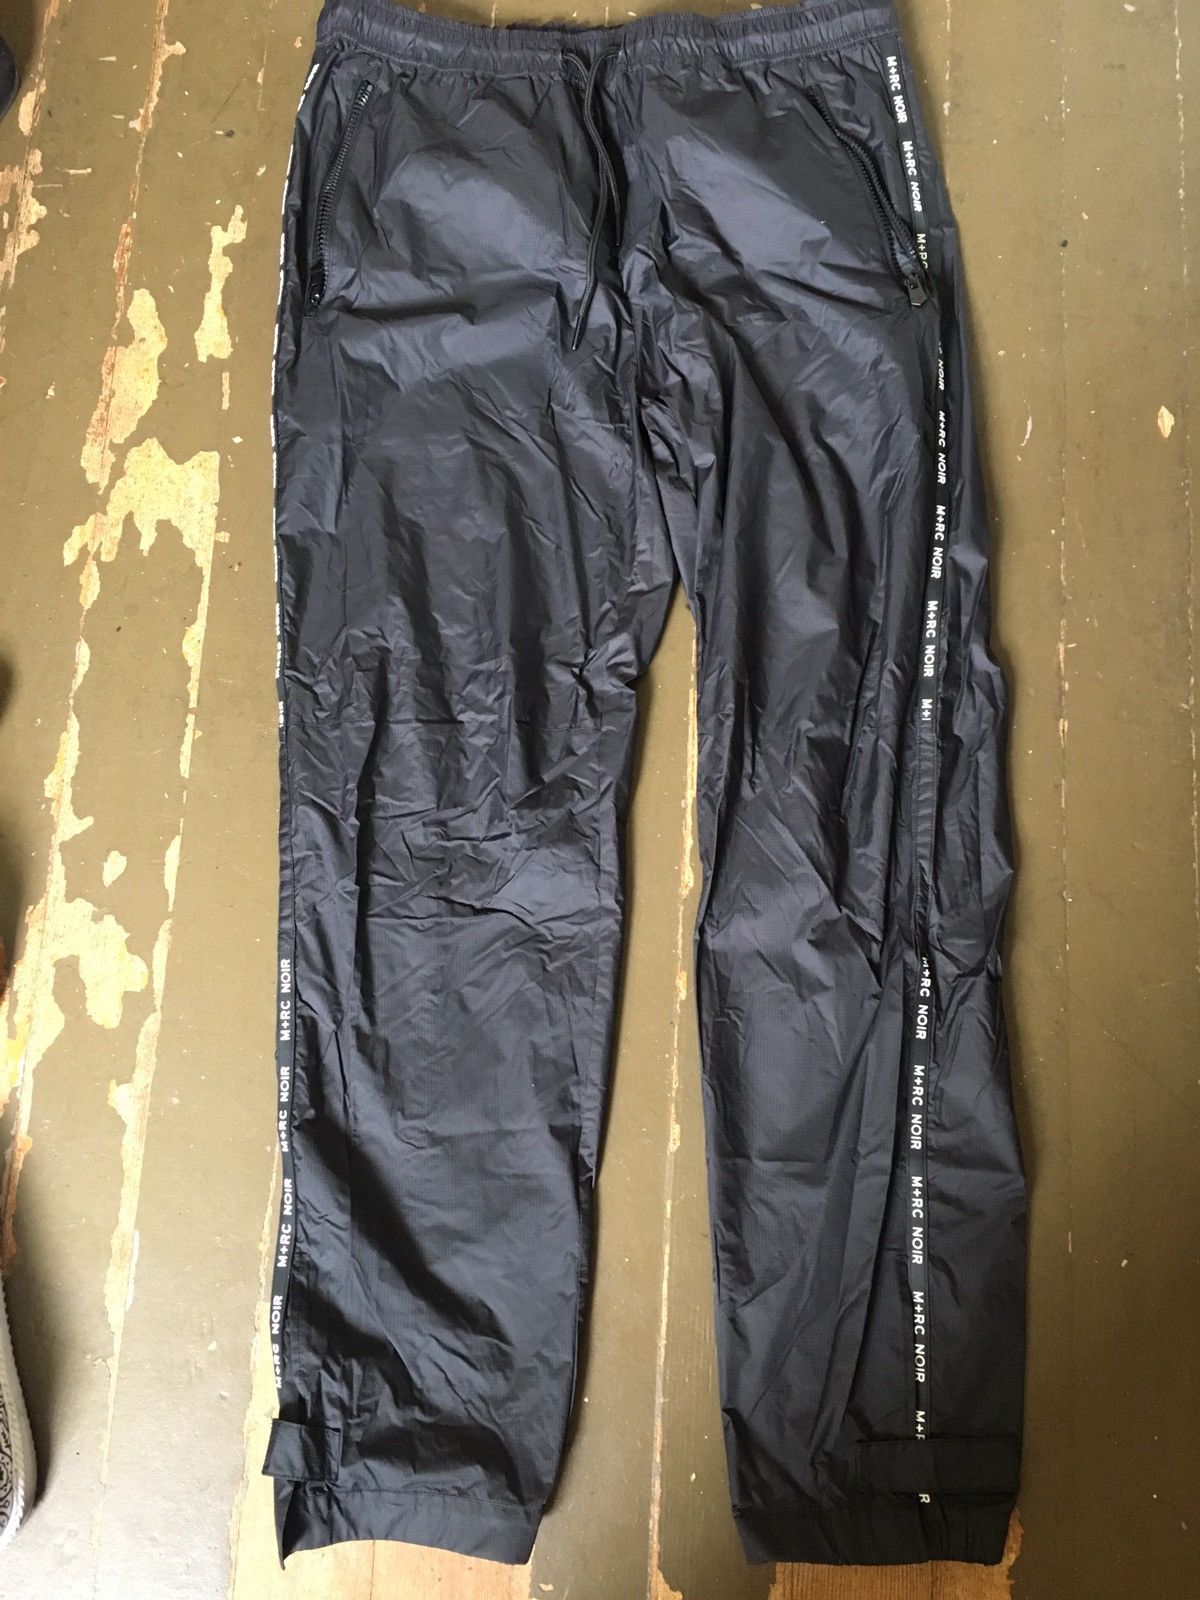 M+Rc Noir mrc noir nylon track pants | Grailed